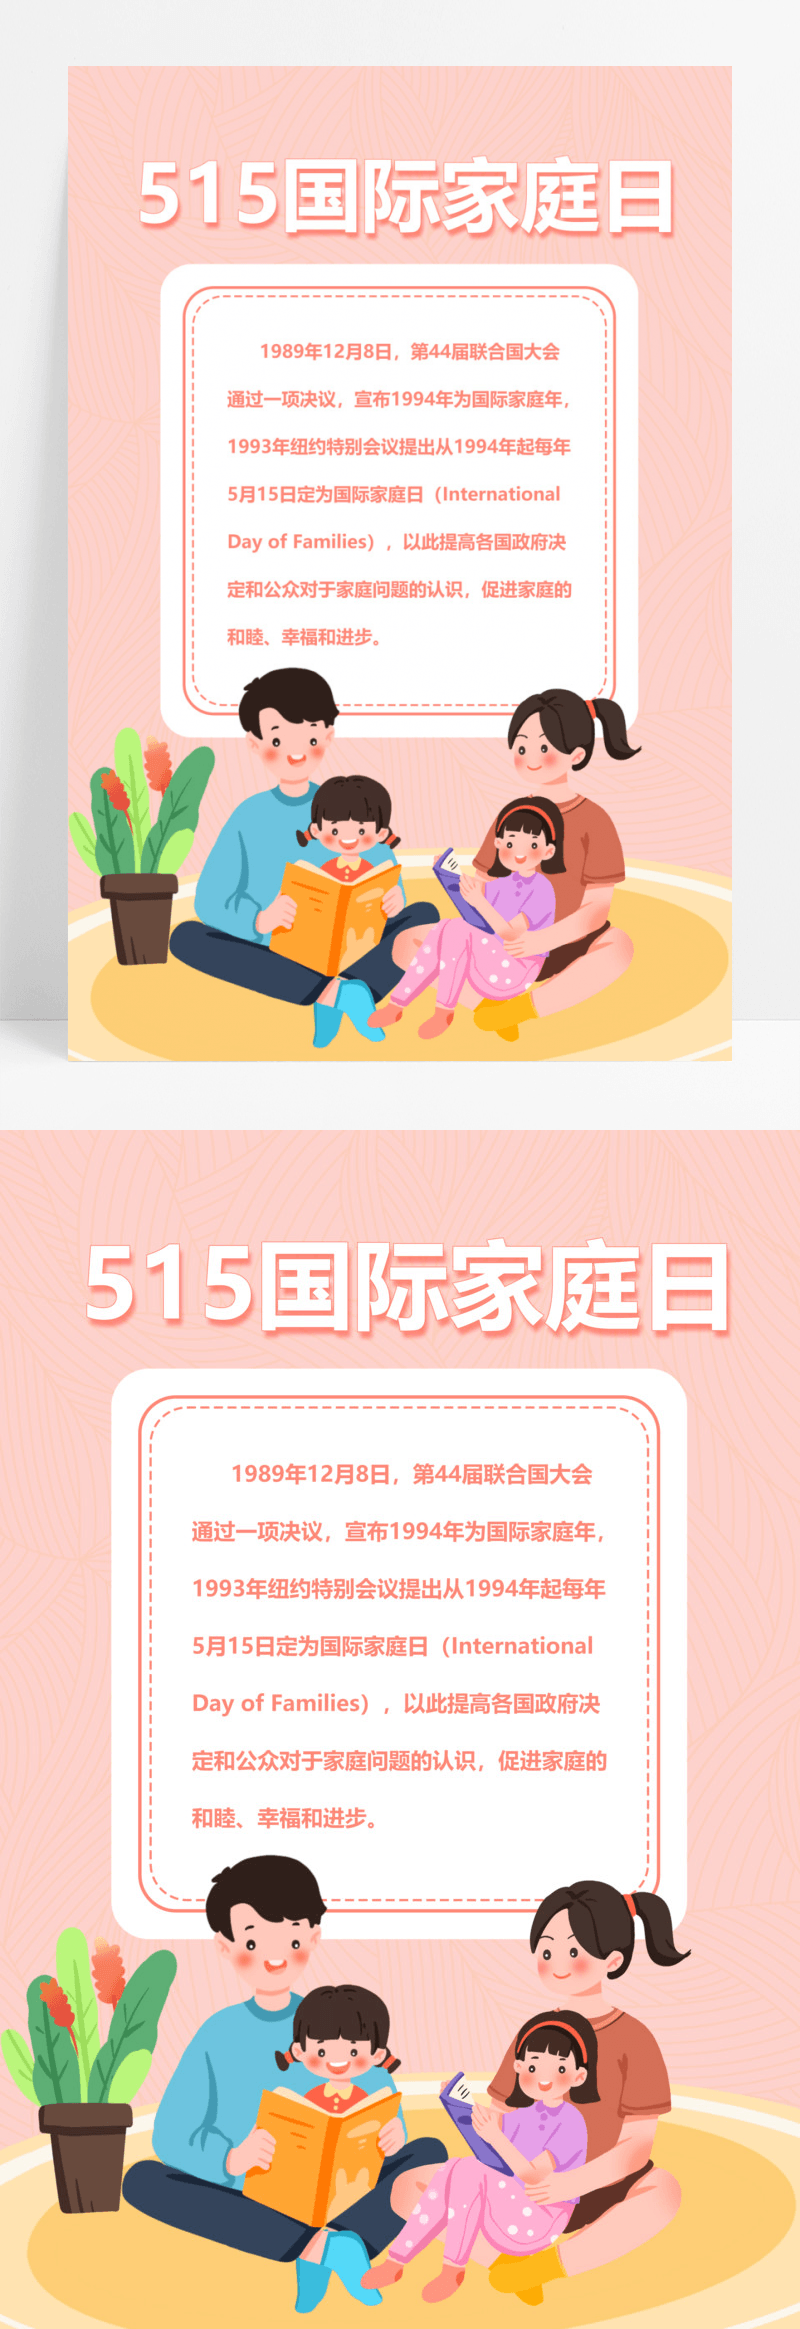 515清新简约国际家庭日海报宣传